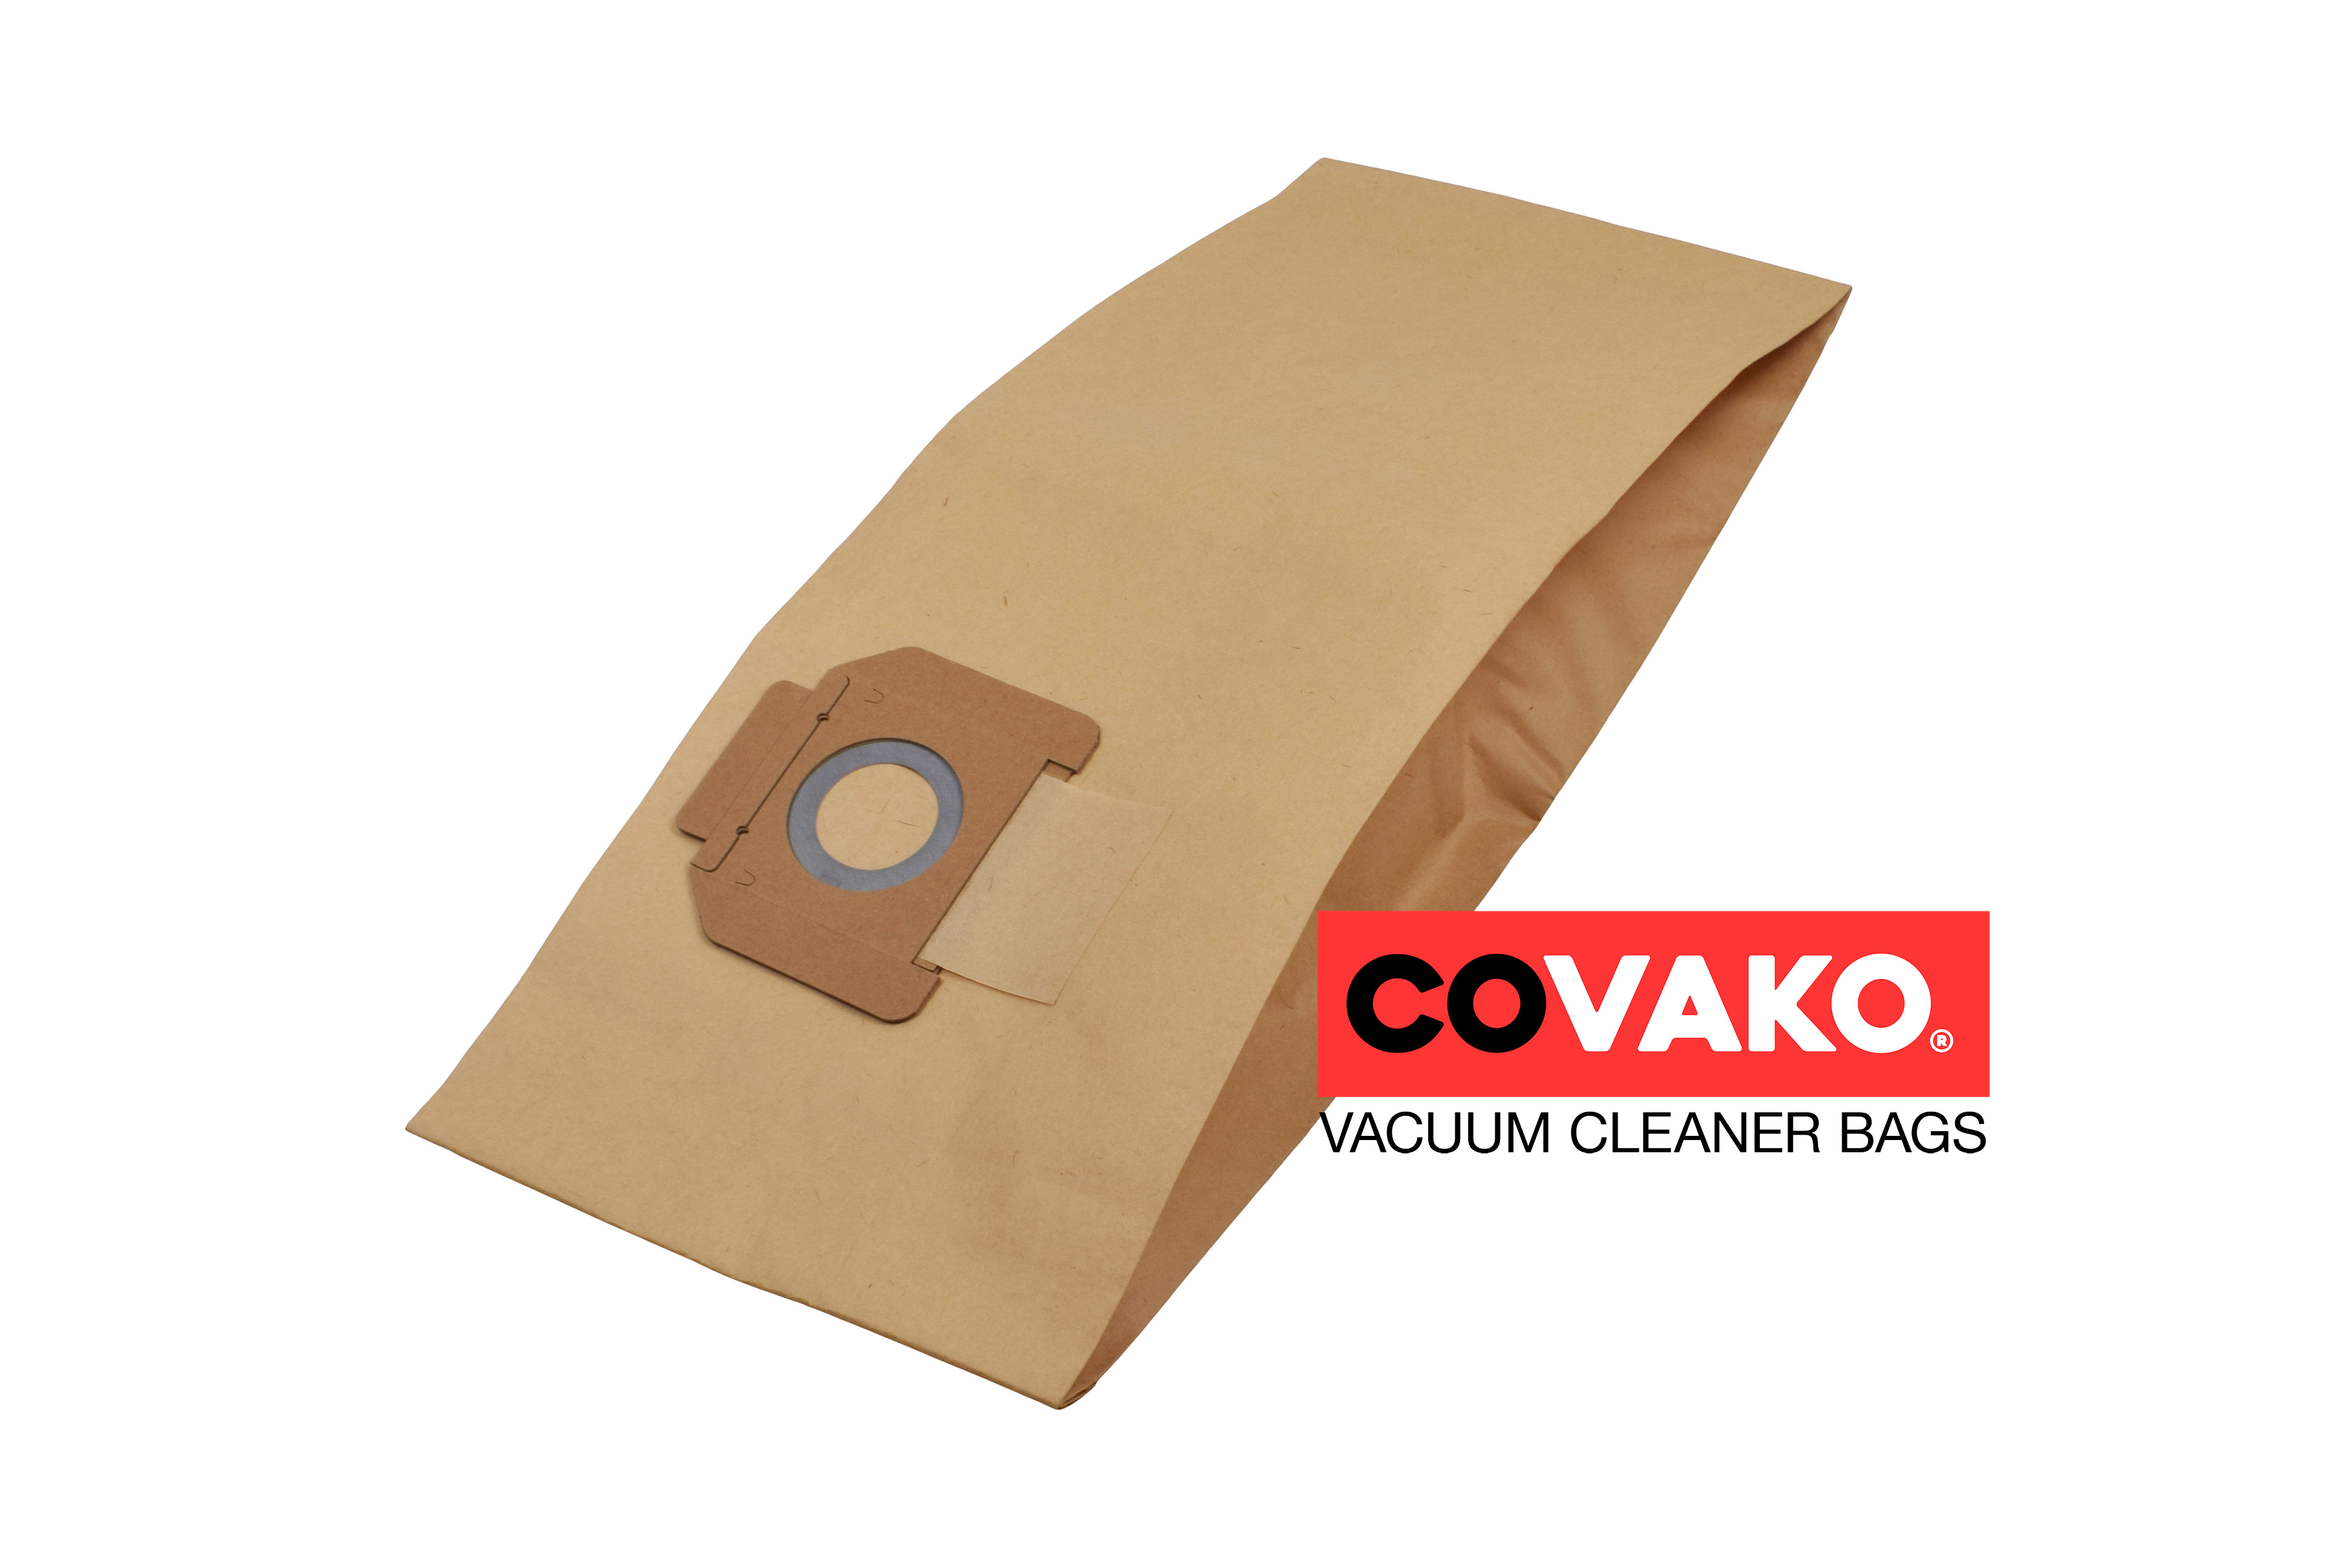 Alto IVB 30 / Paper - Alto vacuum cleaner bags